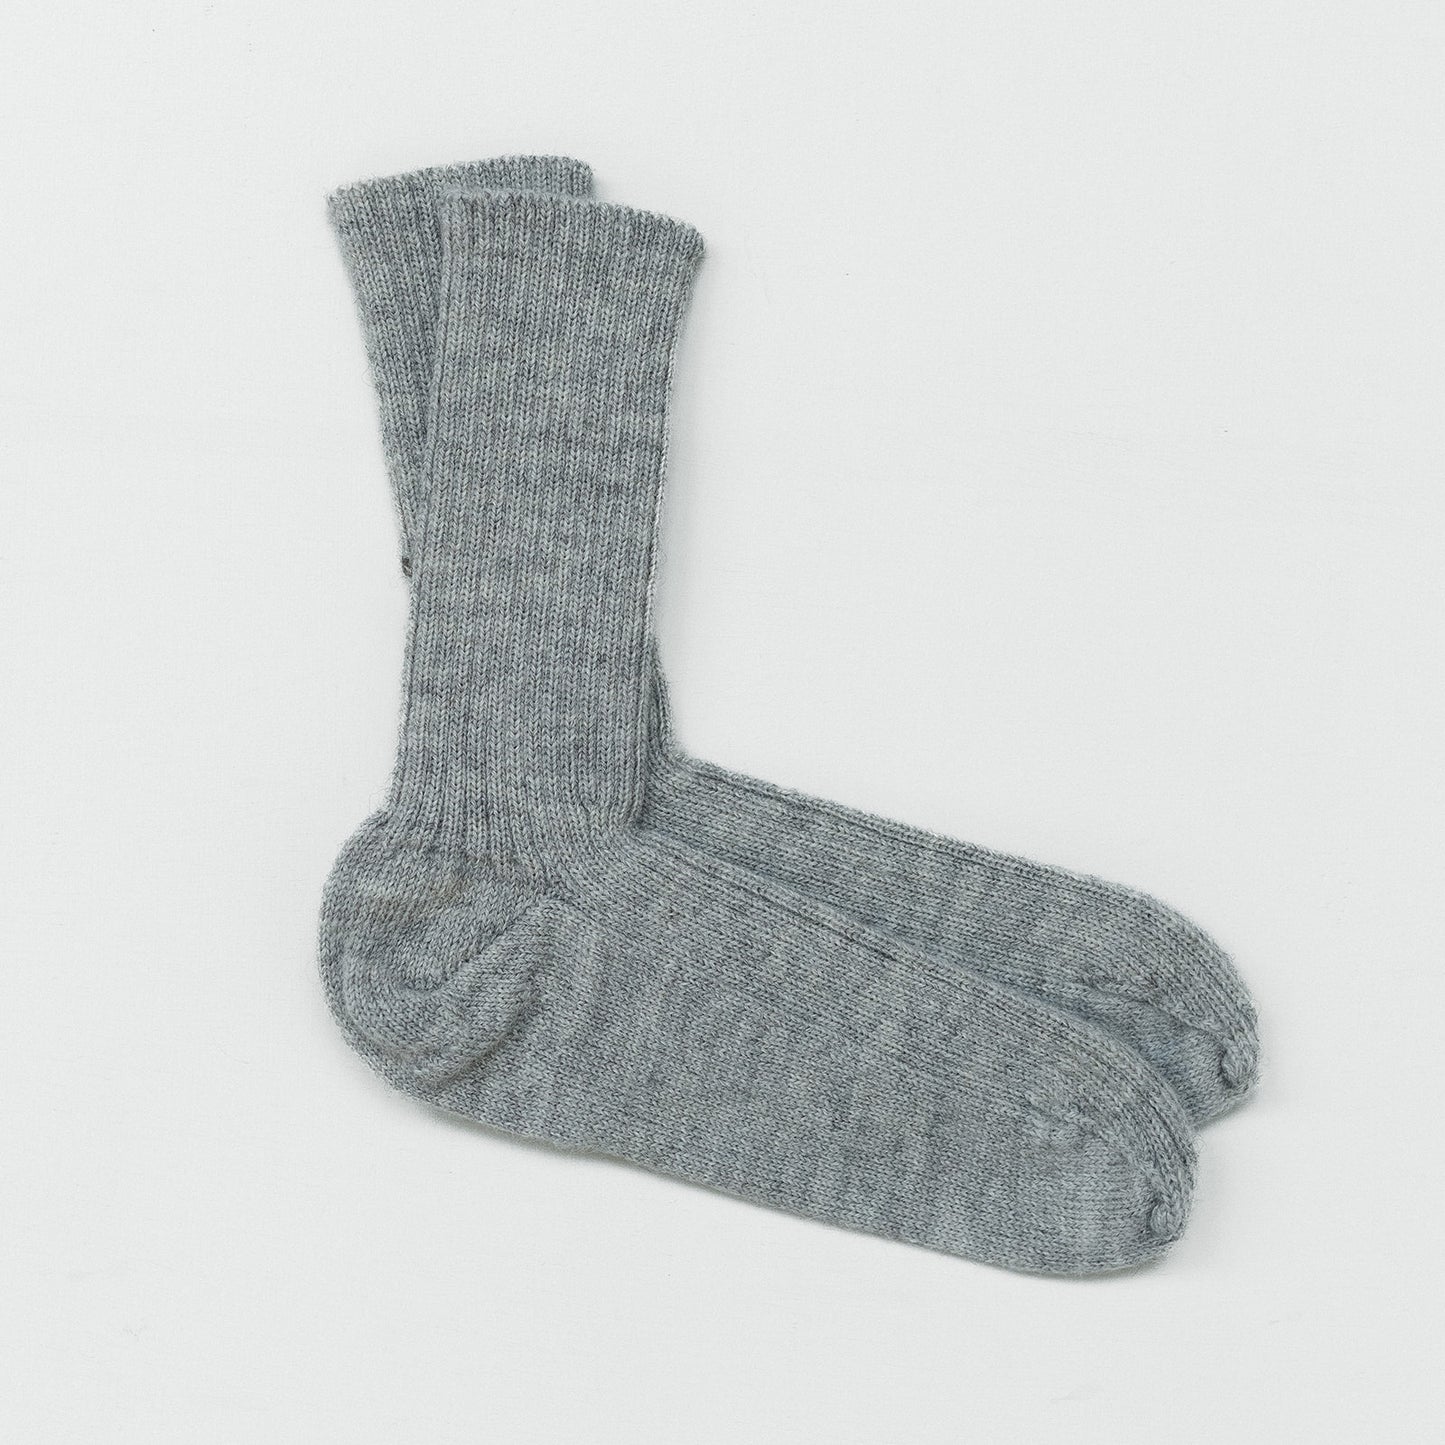 British Wool Socks in Silver Grey